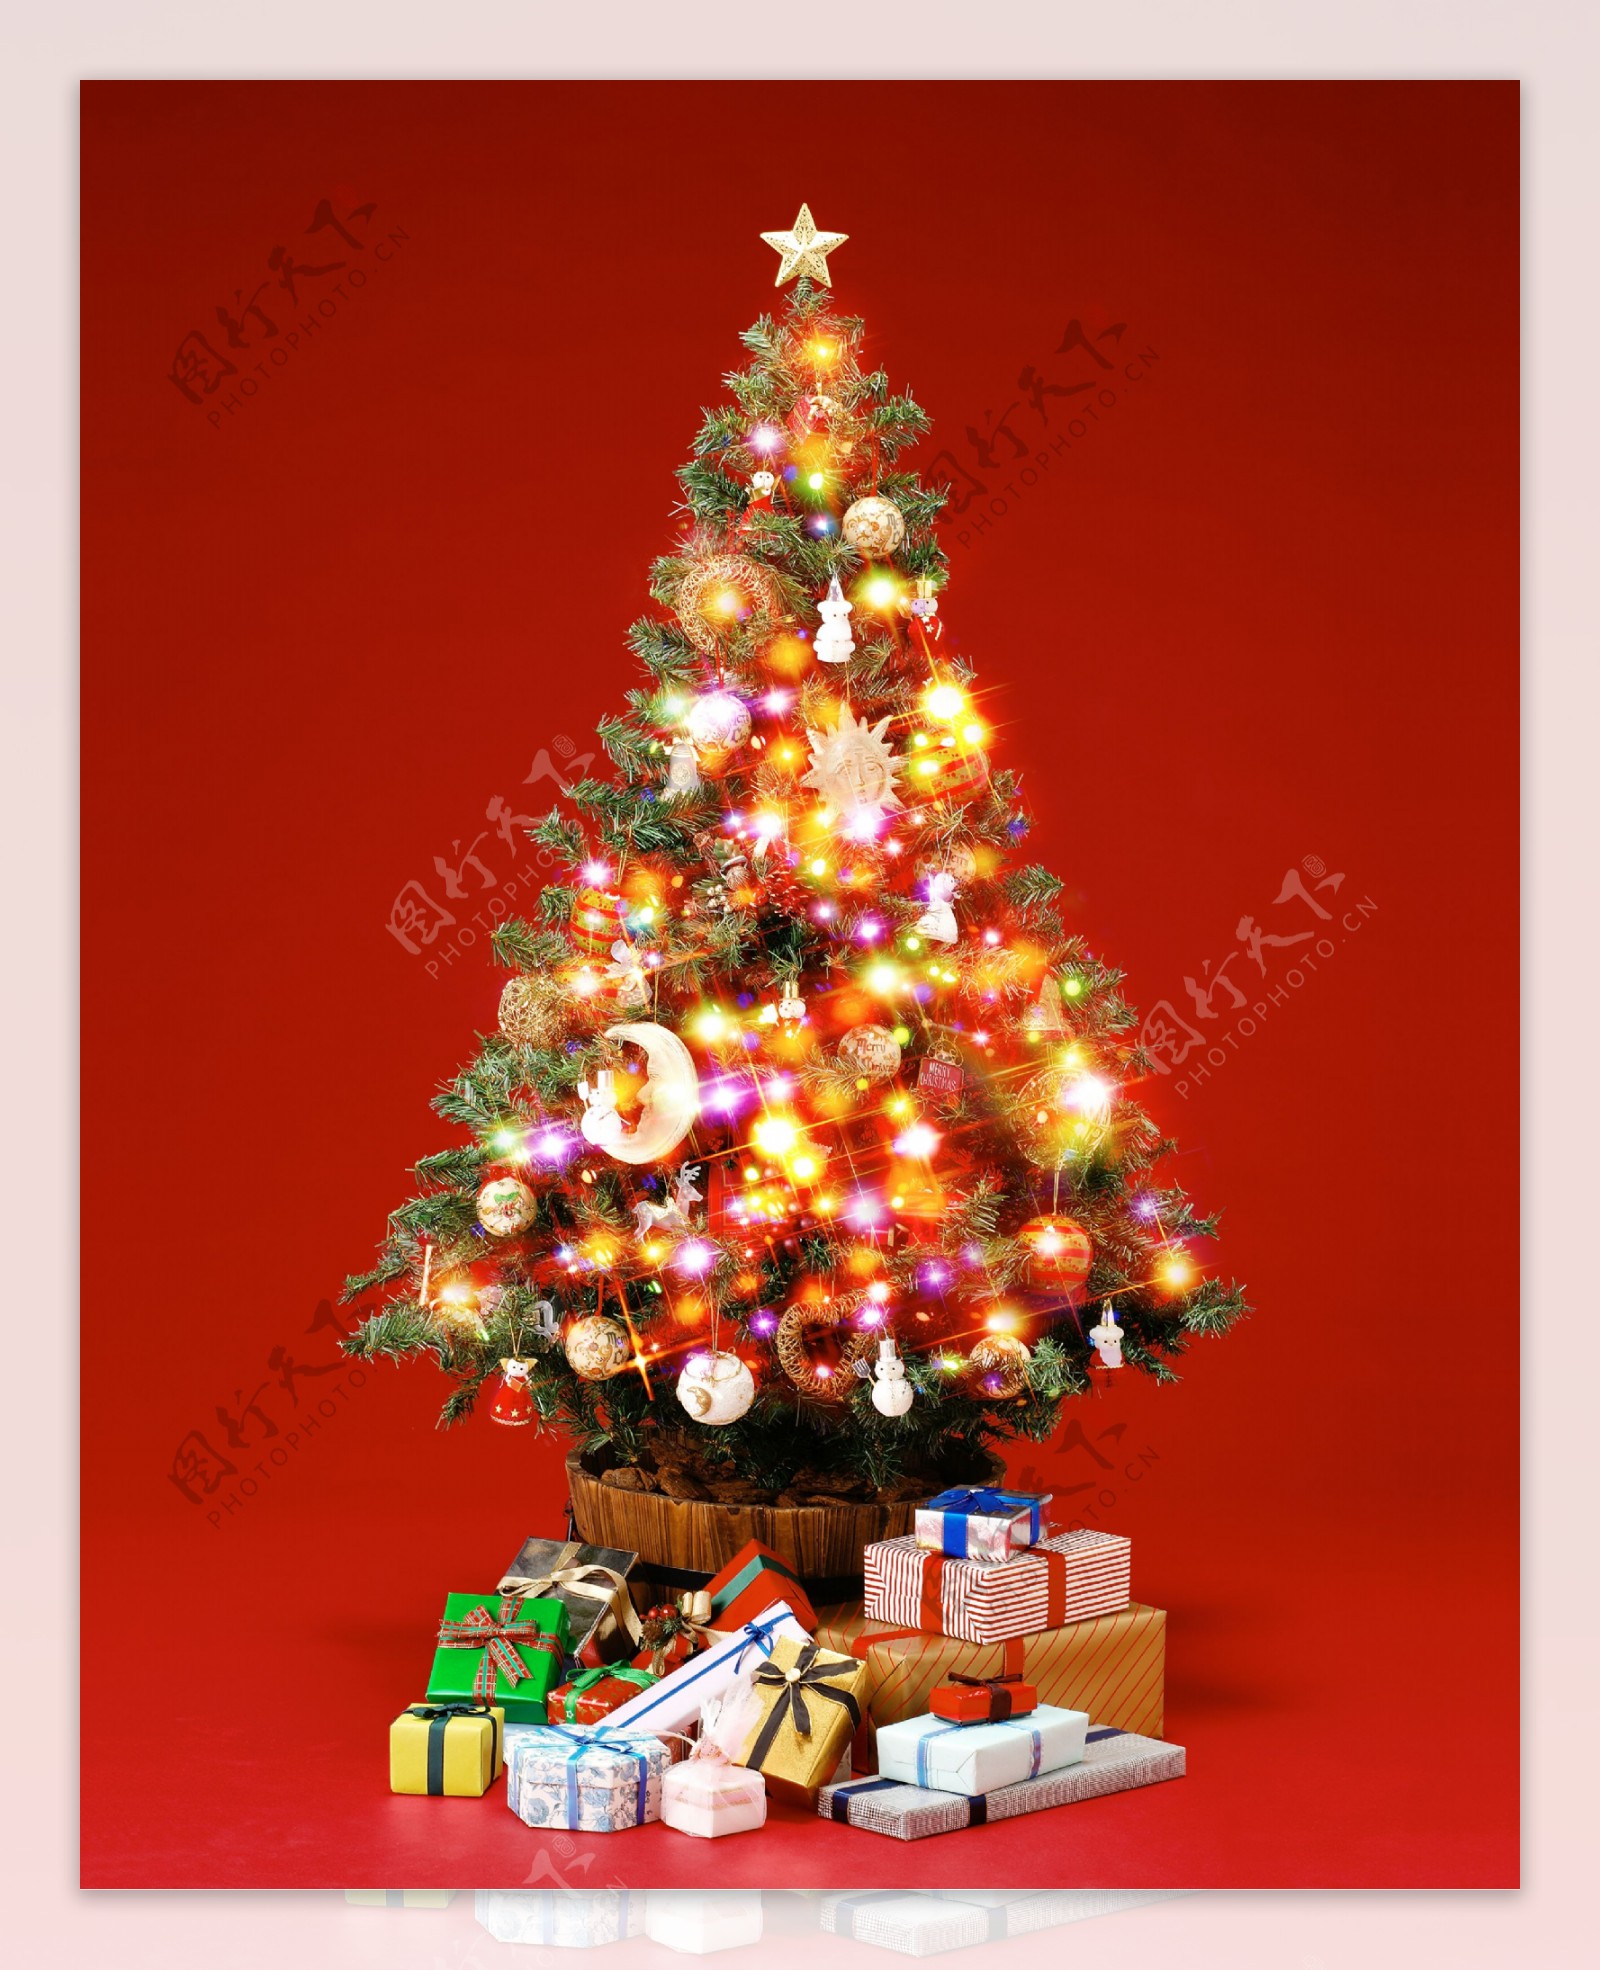 发光的圣诞树高清图片